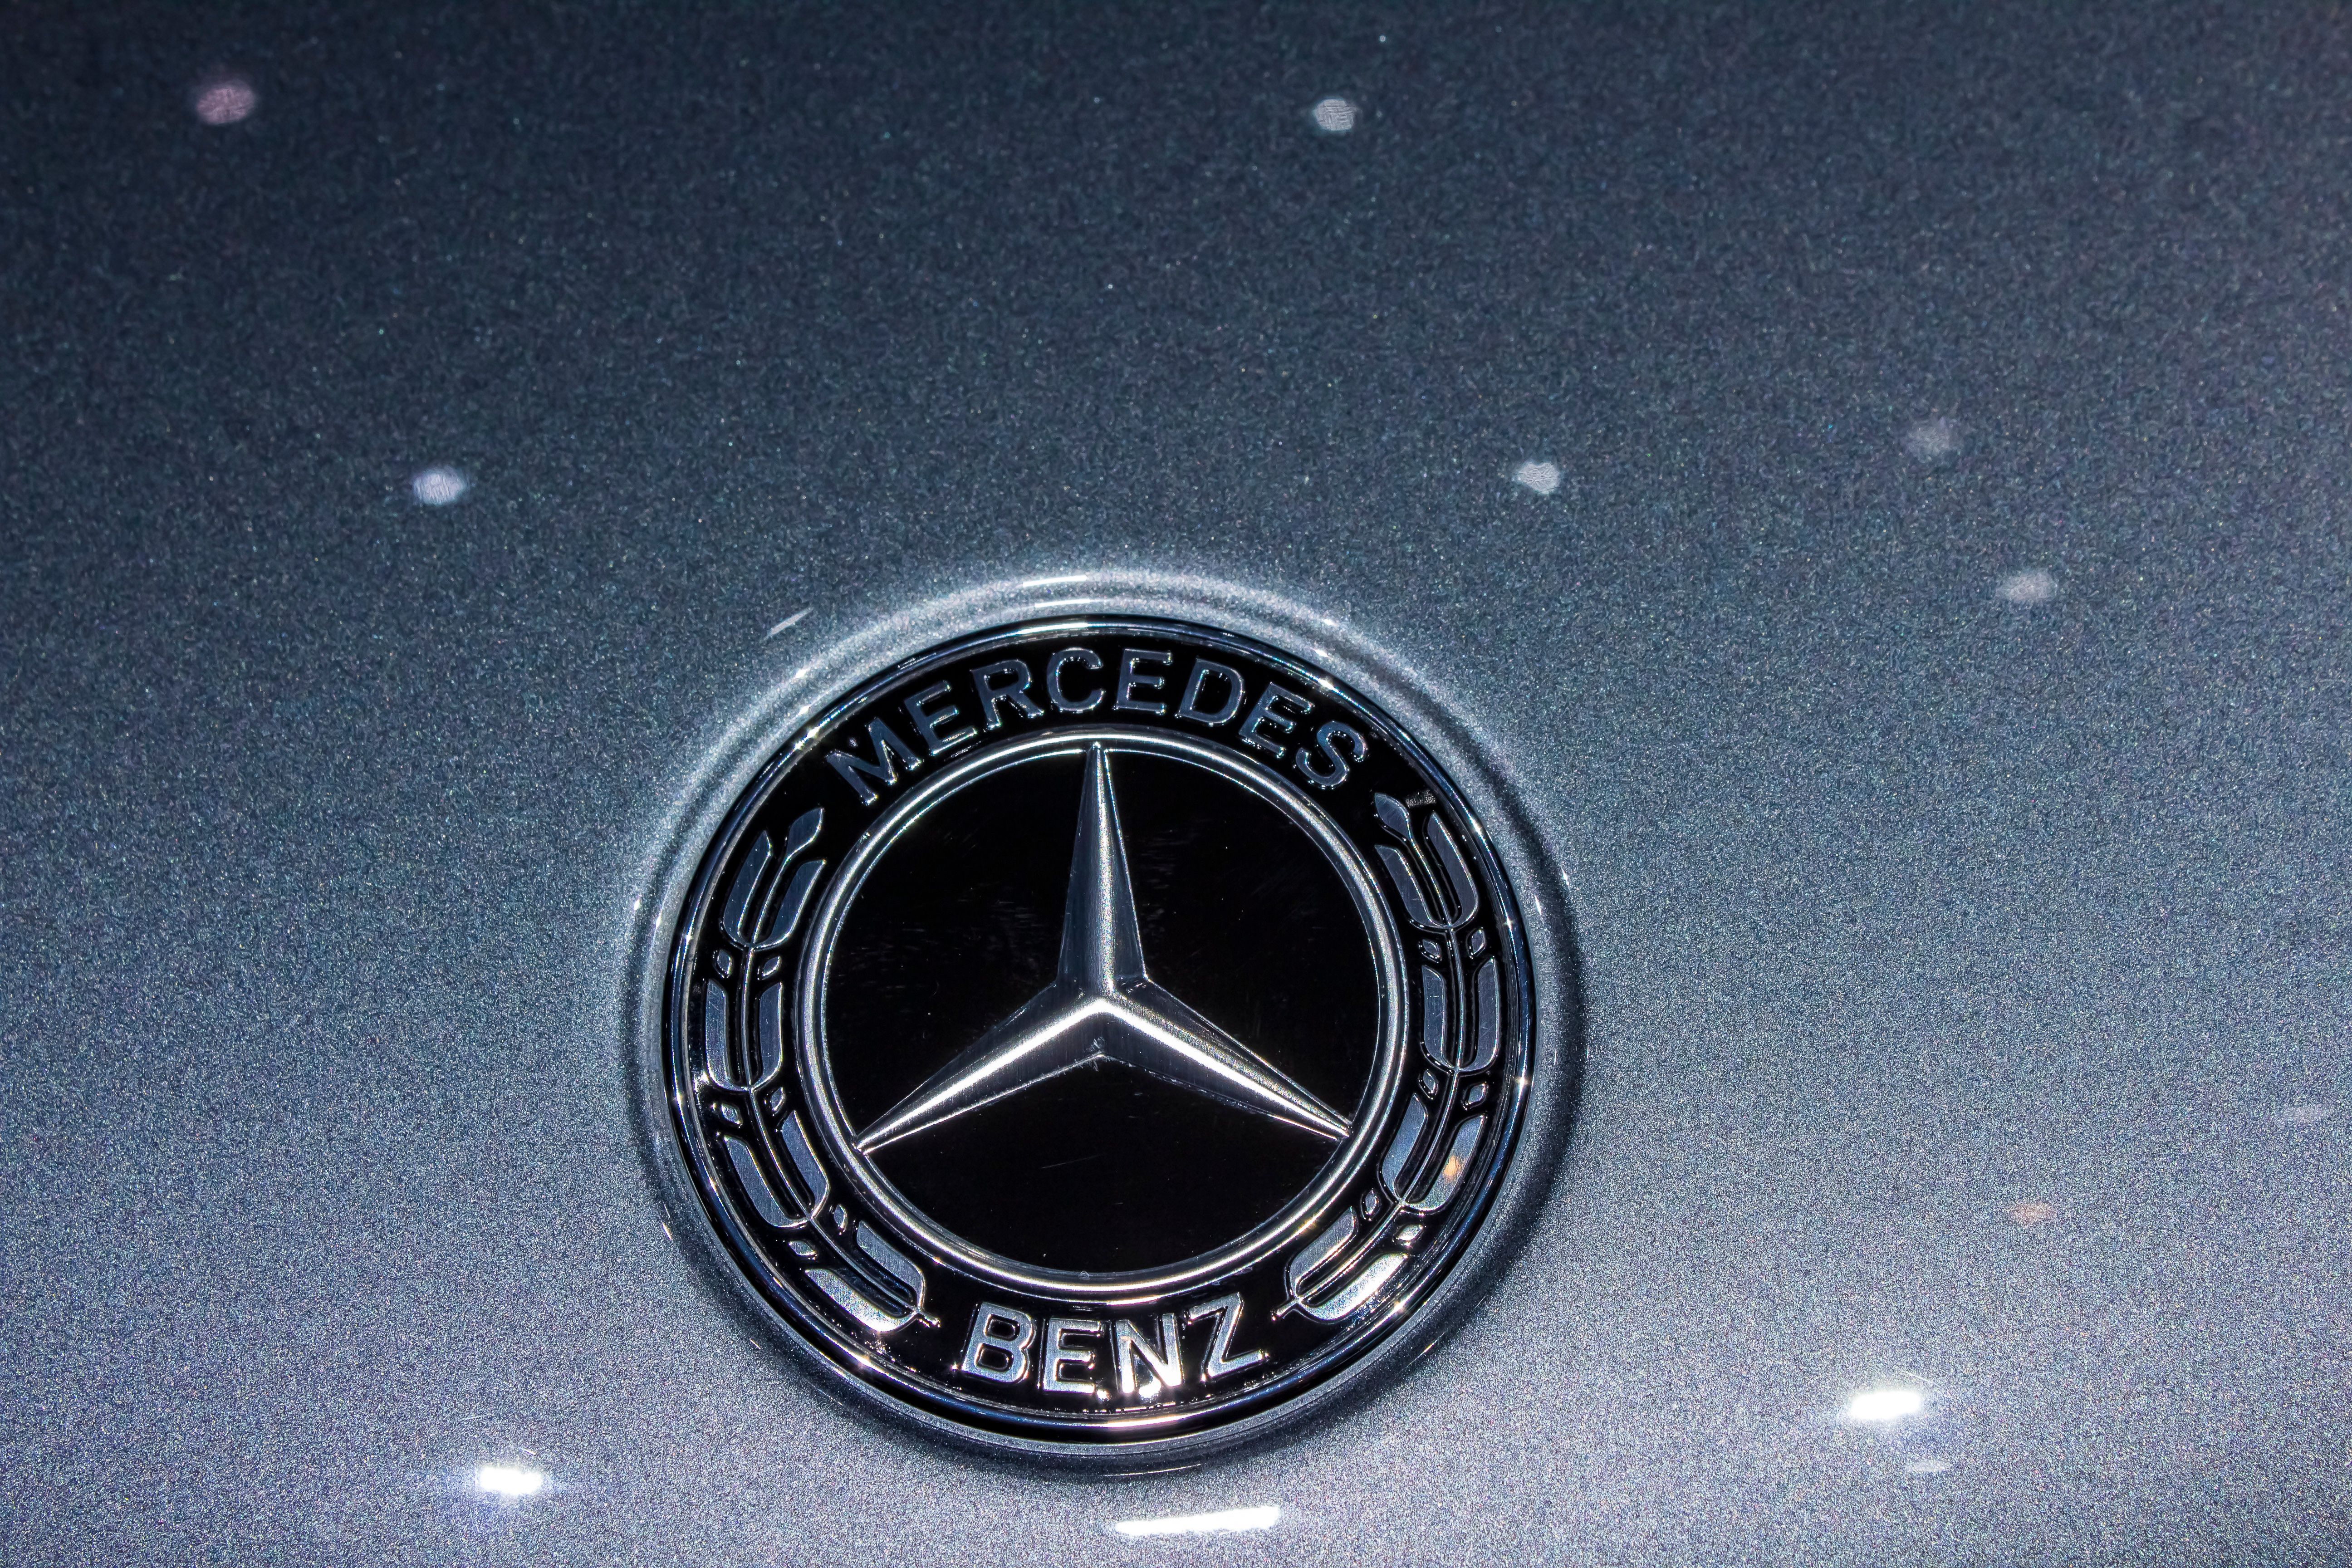 2020 Mercedes-AMG GLE53 